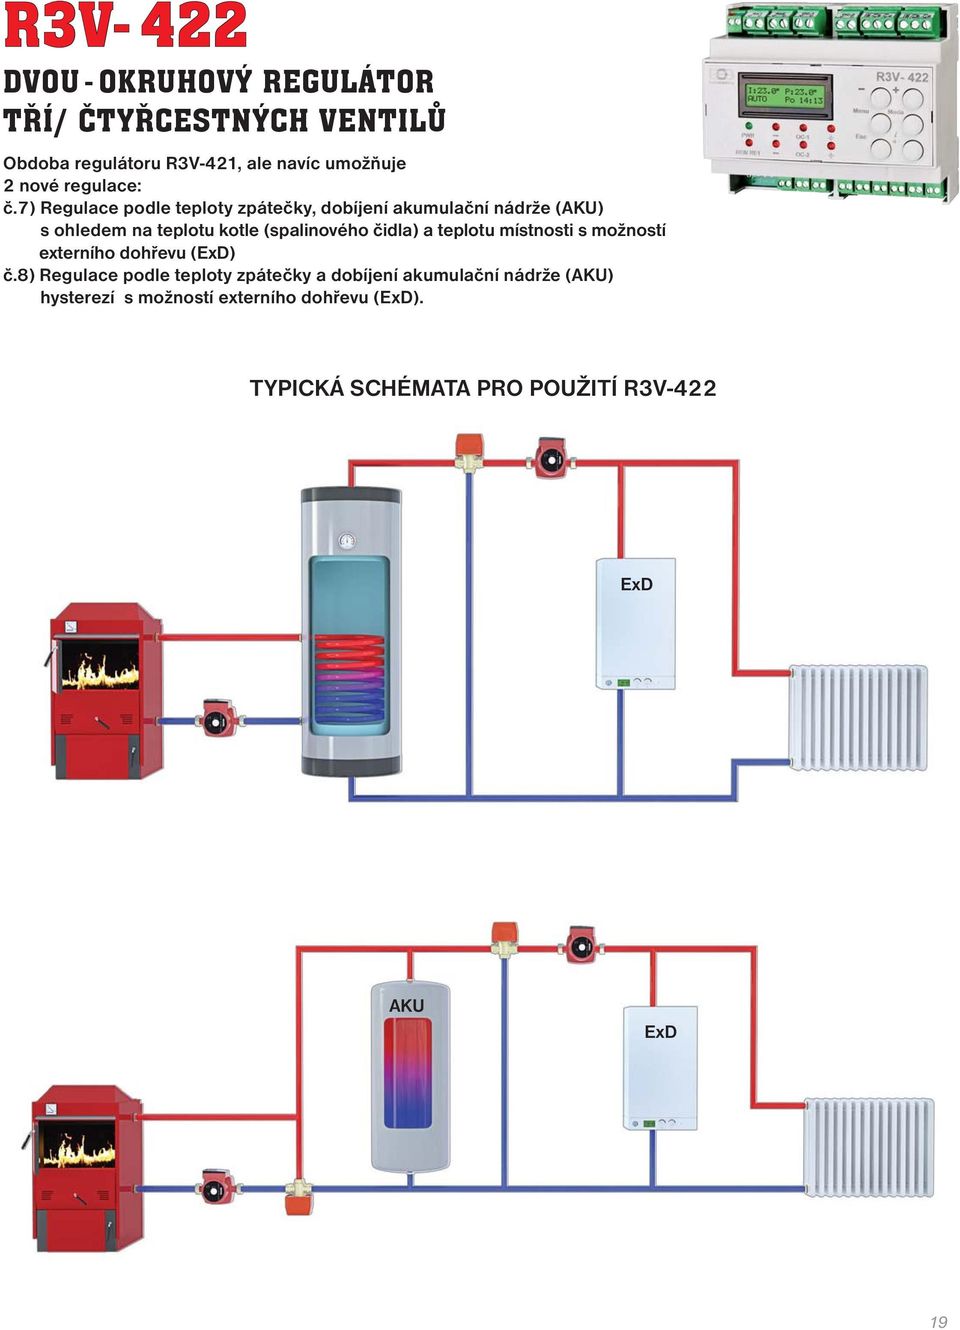 7) Regulace podle teploty zpátečky, dobíjení akumulační nádrže (AKU) s ohledem na teplotu kotle (spalinového čidla)